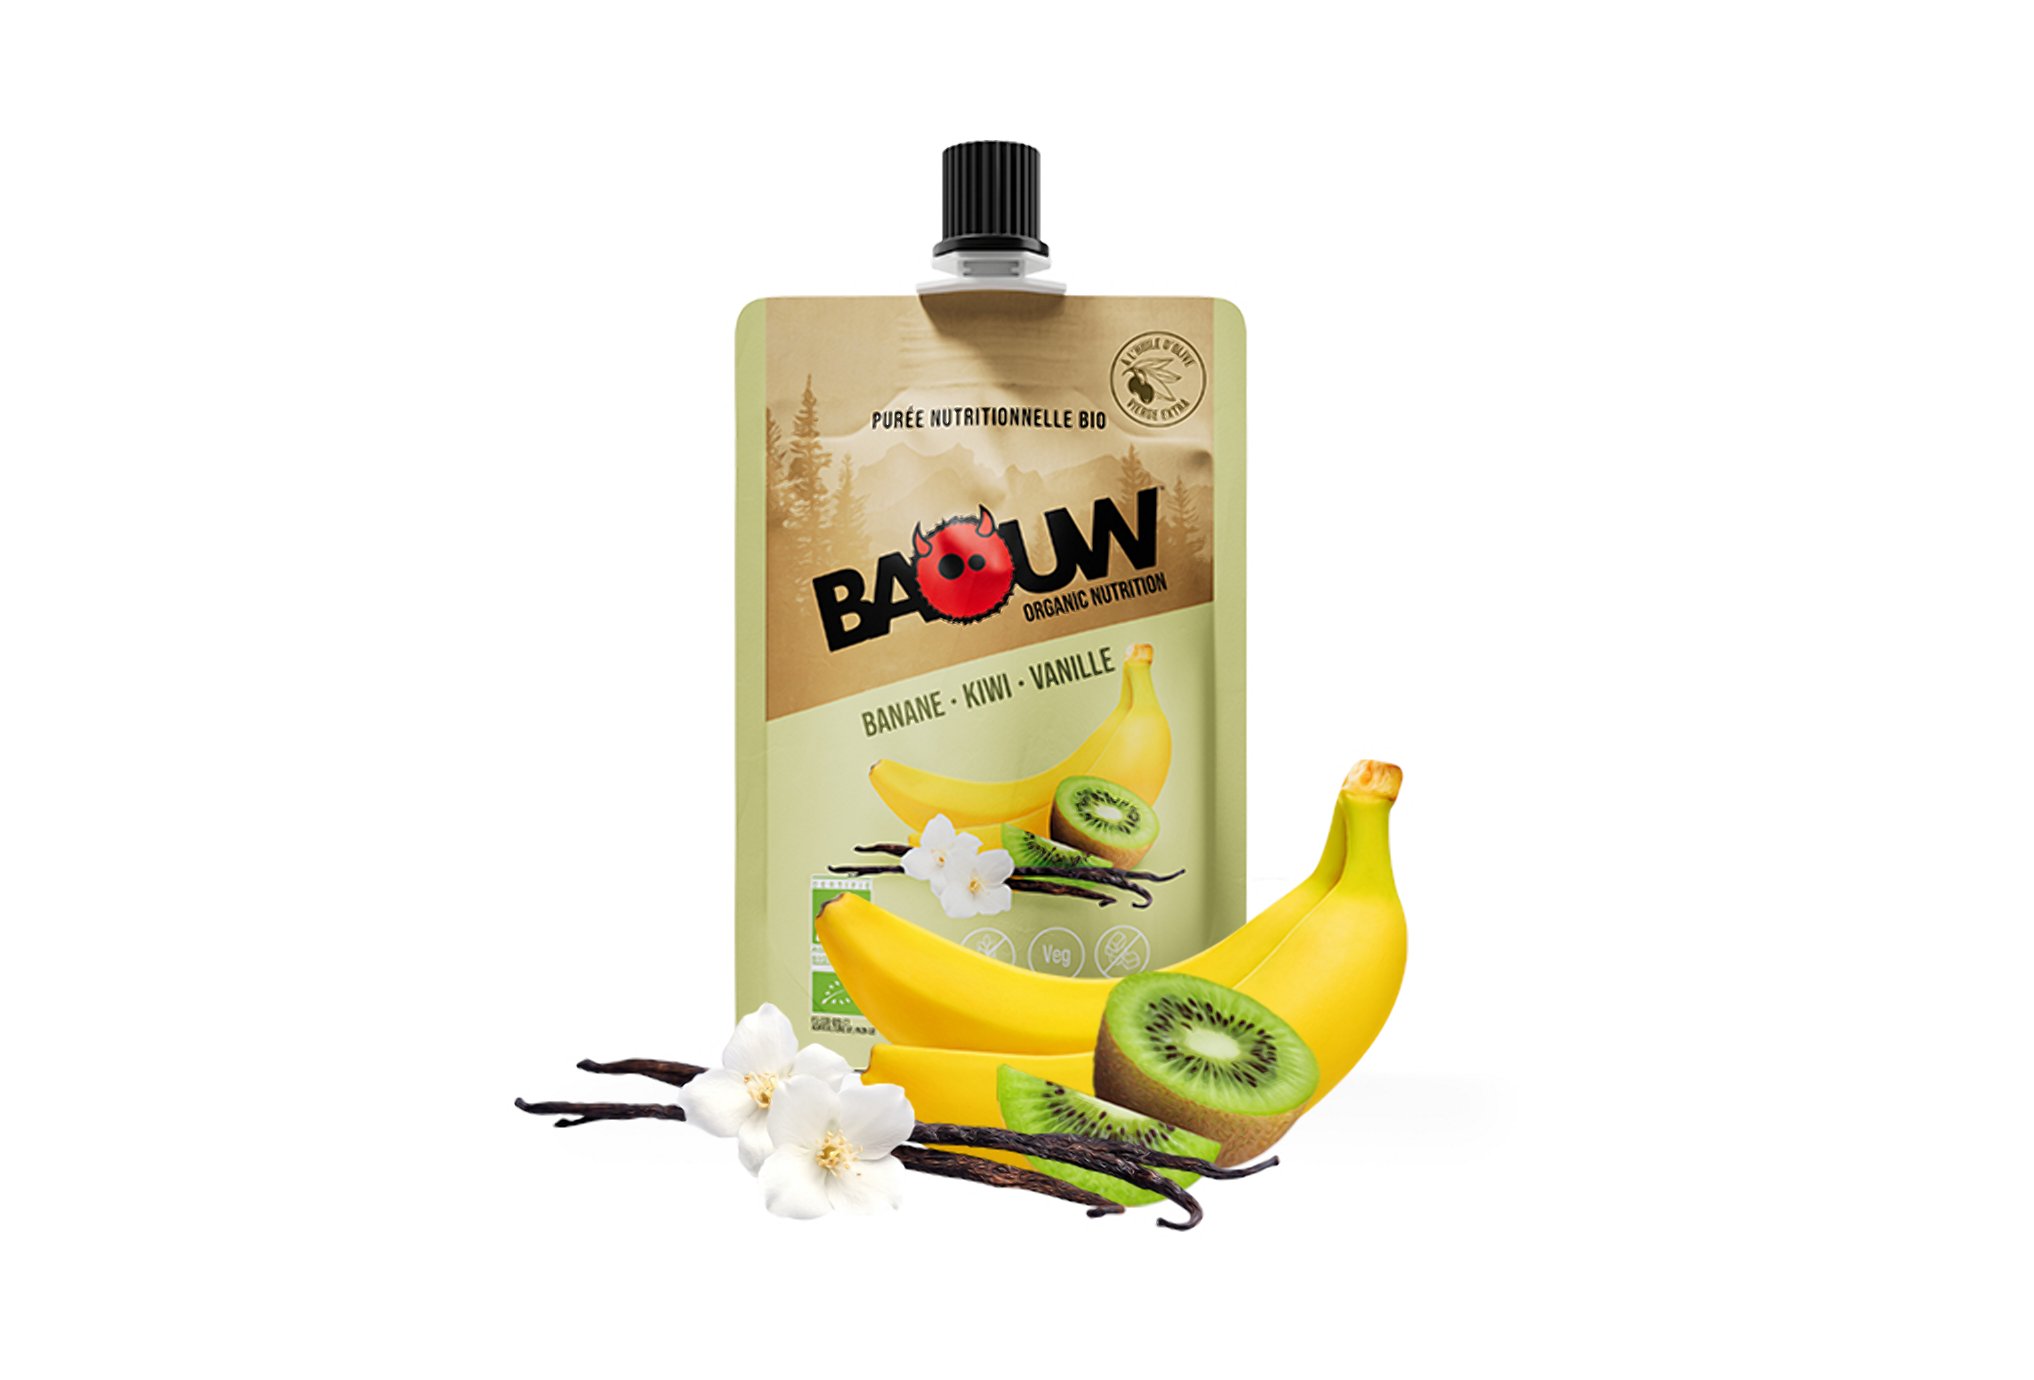 Baouw Purée nutritionnelle bio - Banane - Kiwi - Vanille Diététique Gels